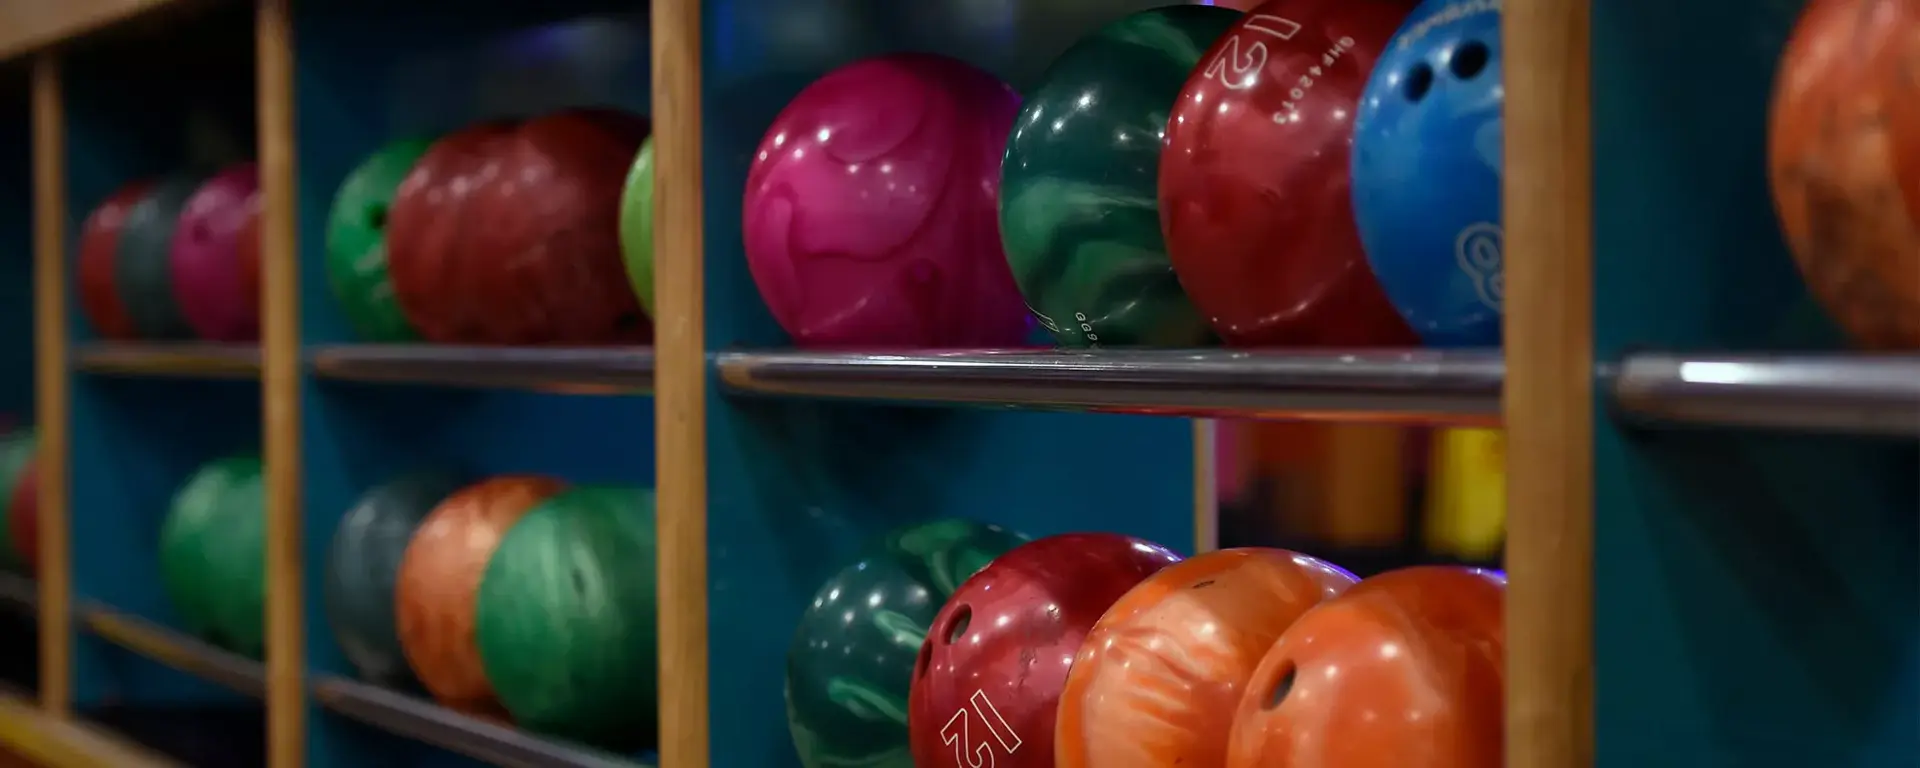 Bowling balls stacked at Hollywood Bowl